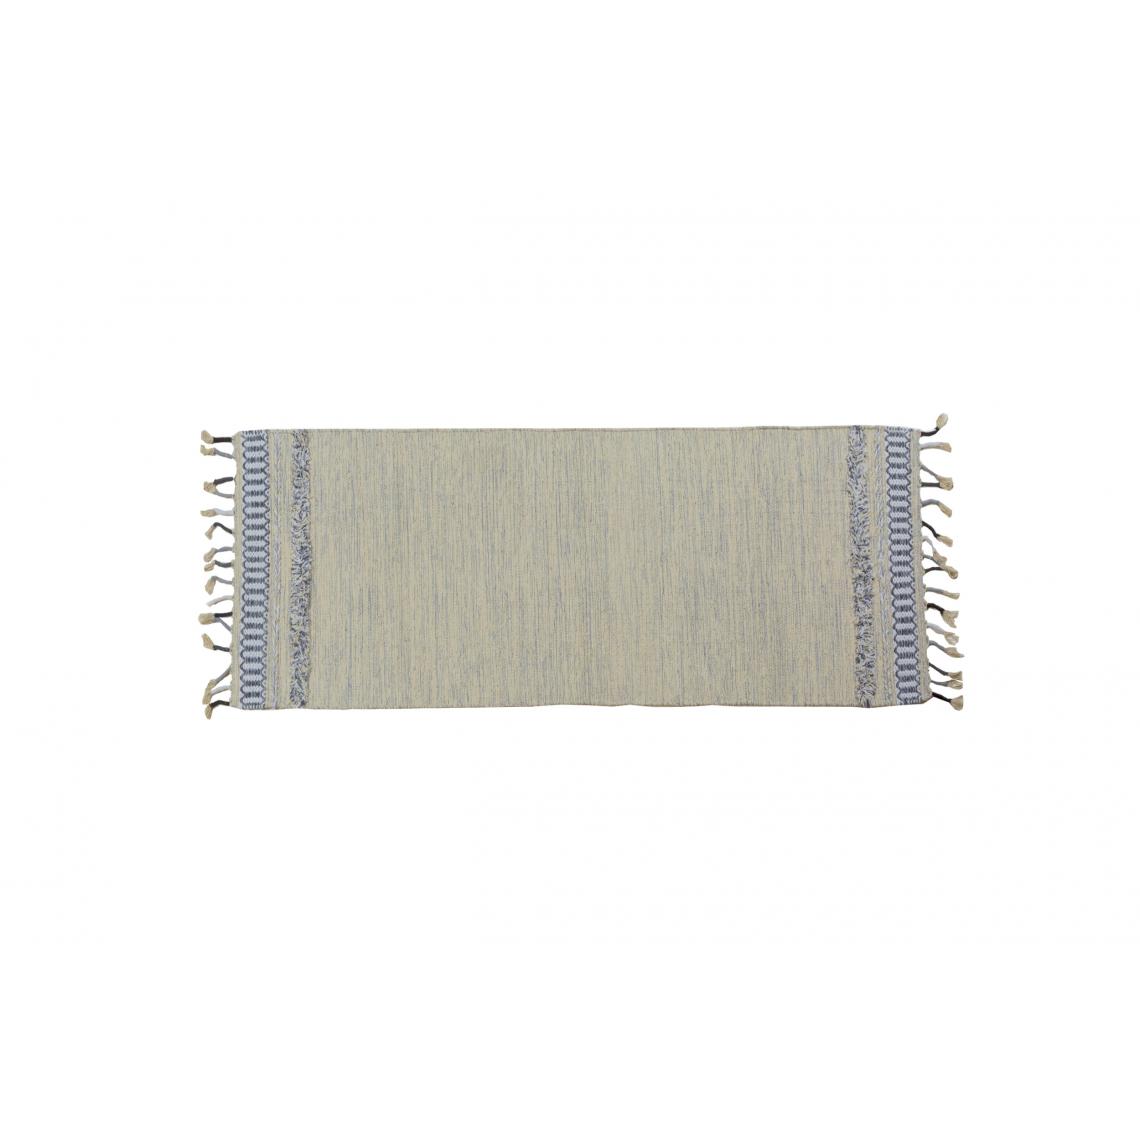 Alter - Tapis boston moderne, style kilim, 100% coton, gris, 180x60cm - Tapis